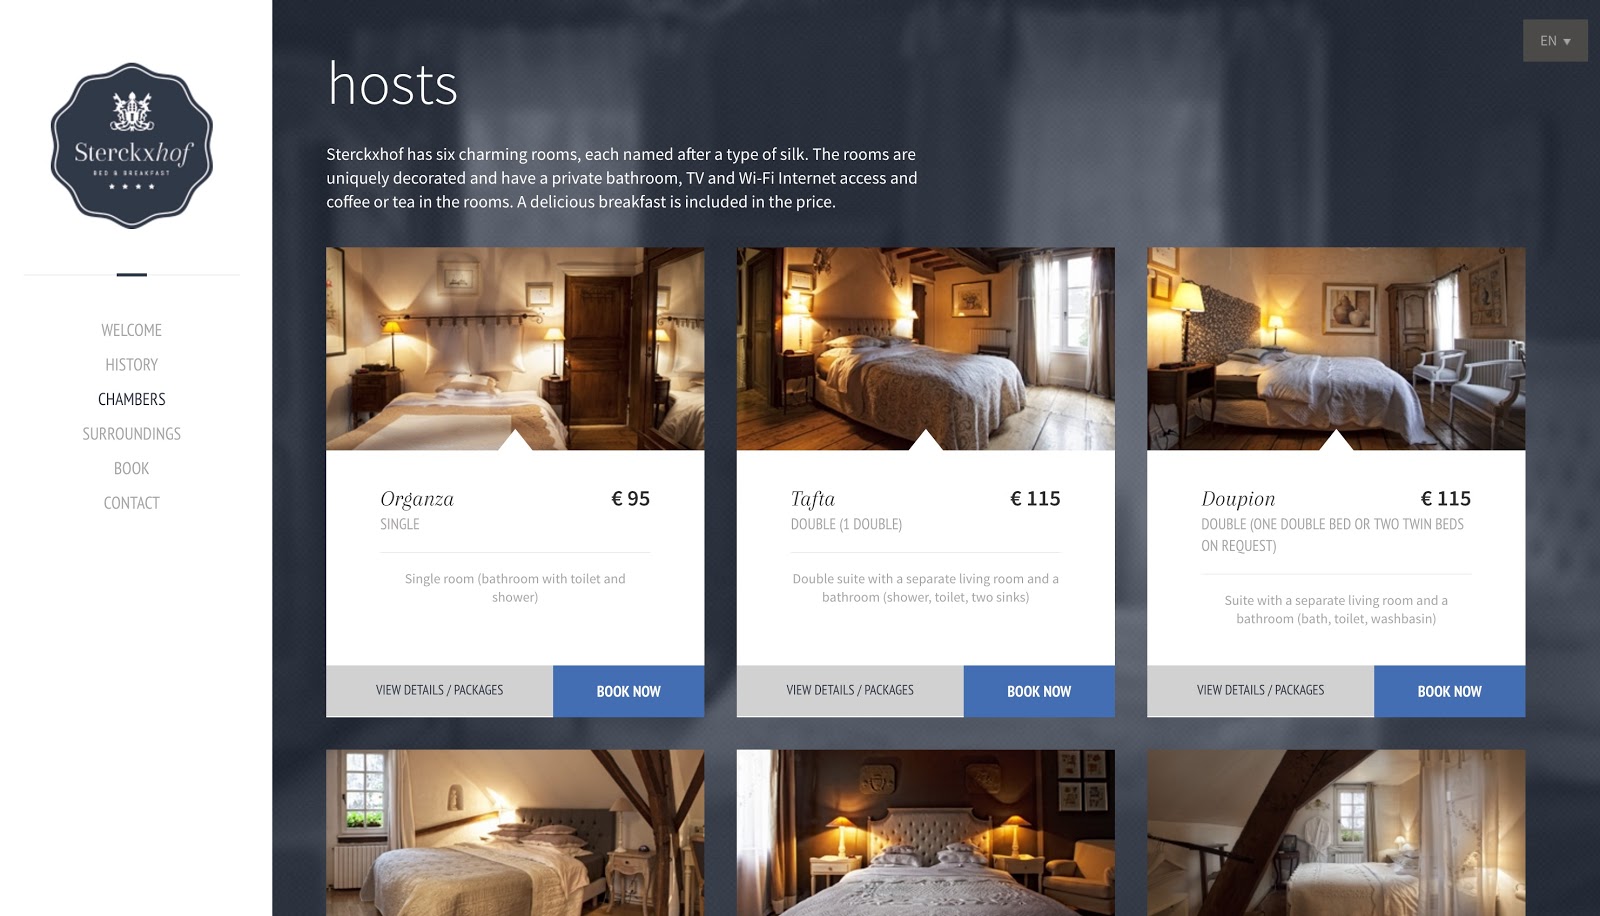 Web design inspiration for independent hotels